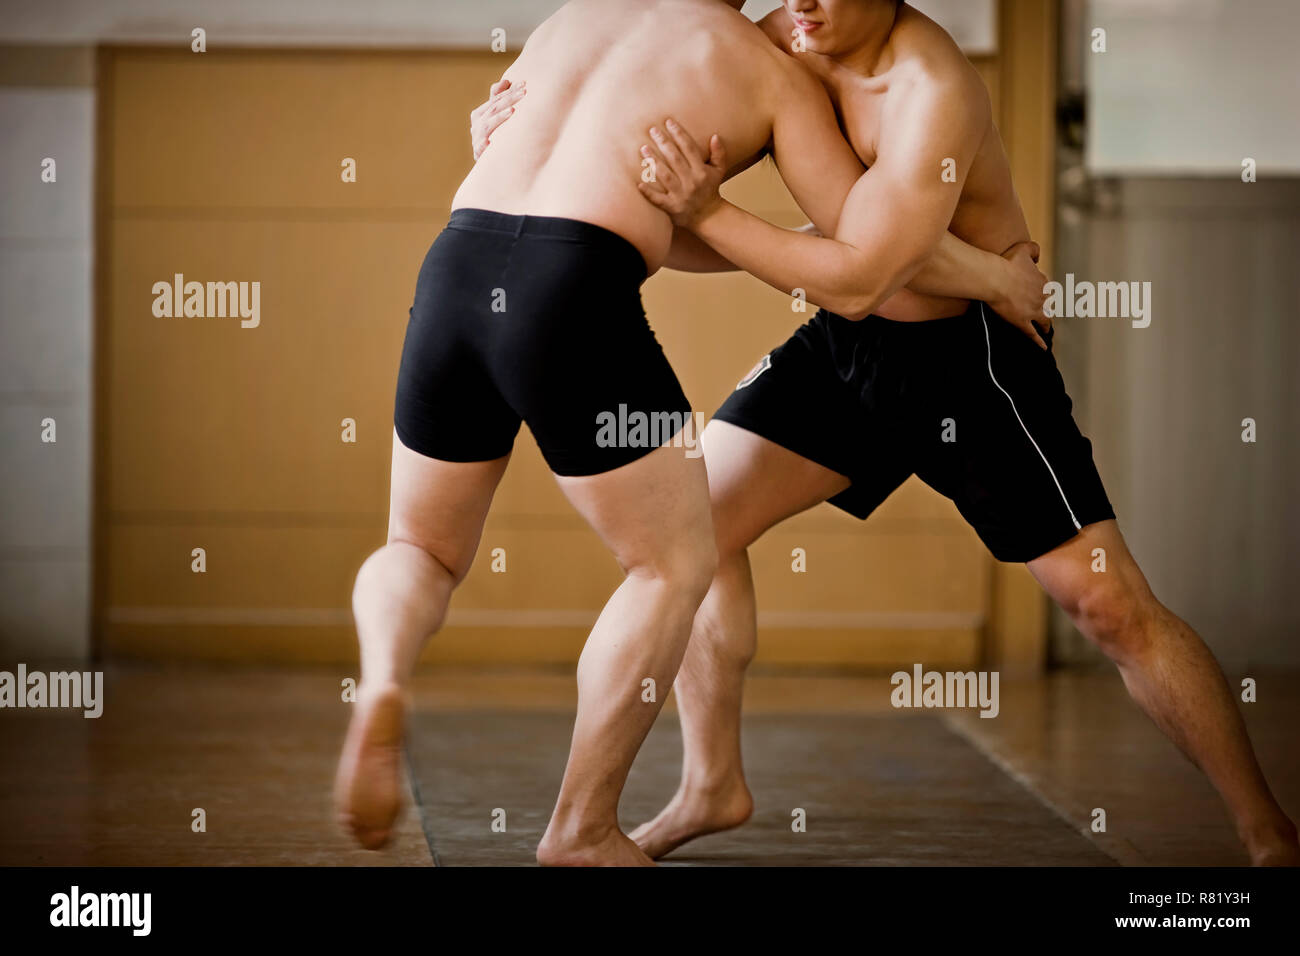 Two men wrestling. Stock Photo